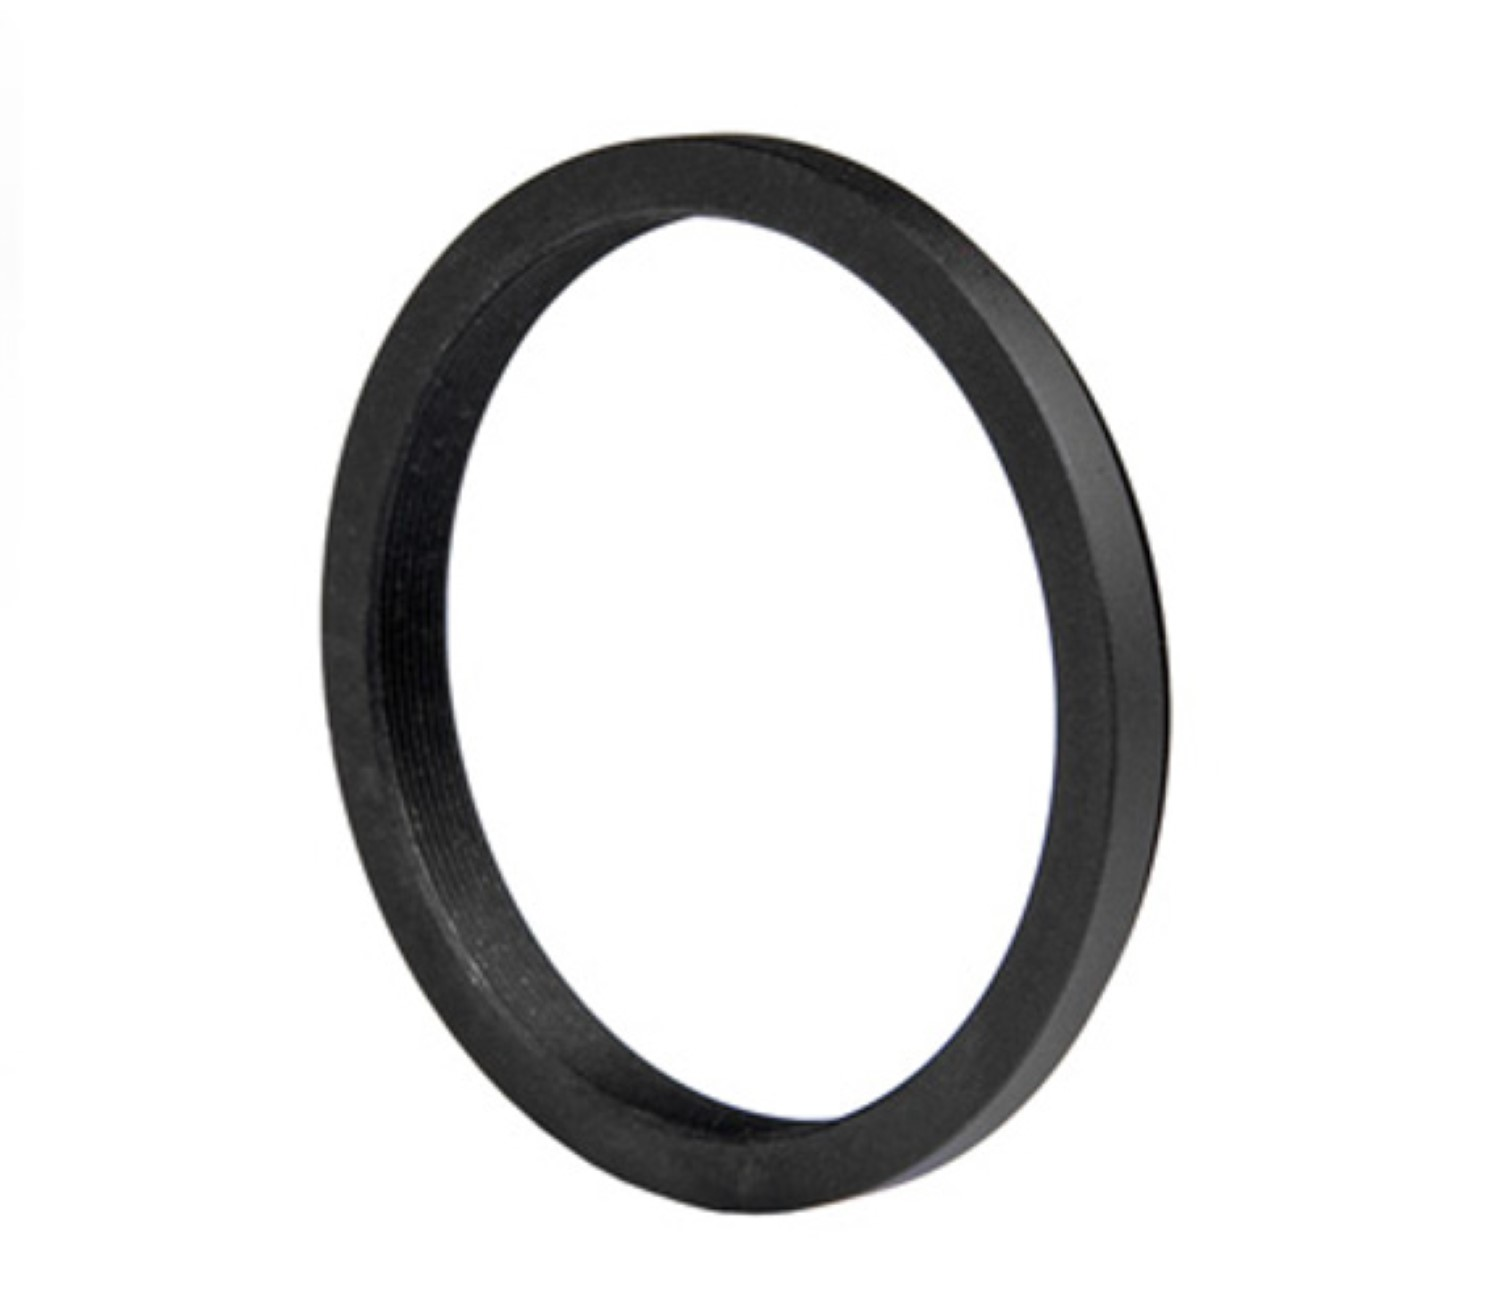 AYEX Step-Down Ring, Black, Adapter, passend mit Filtergewinde für Objektive